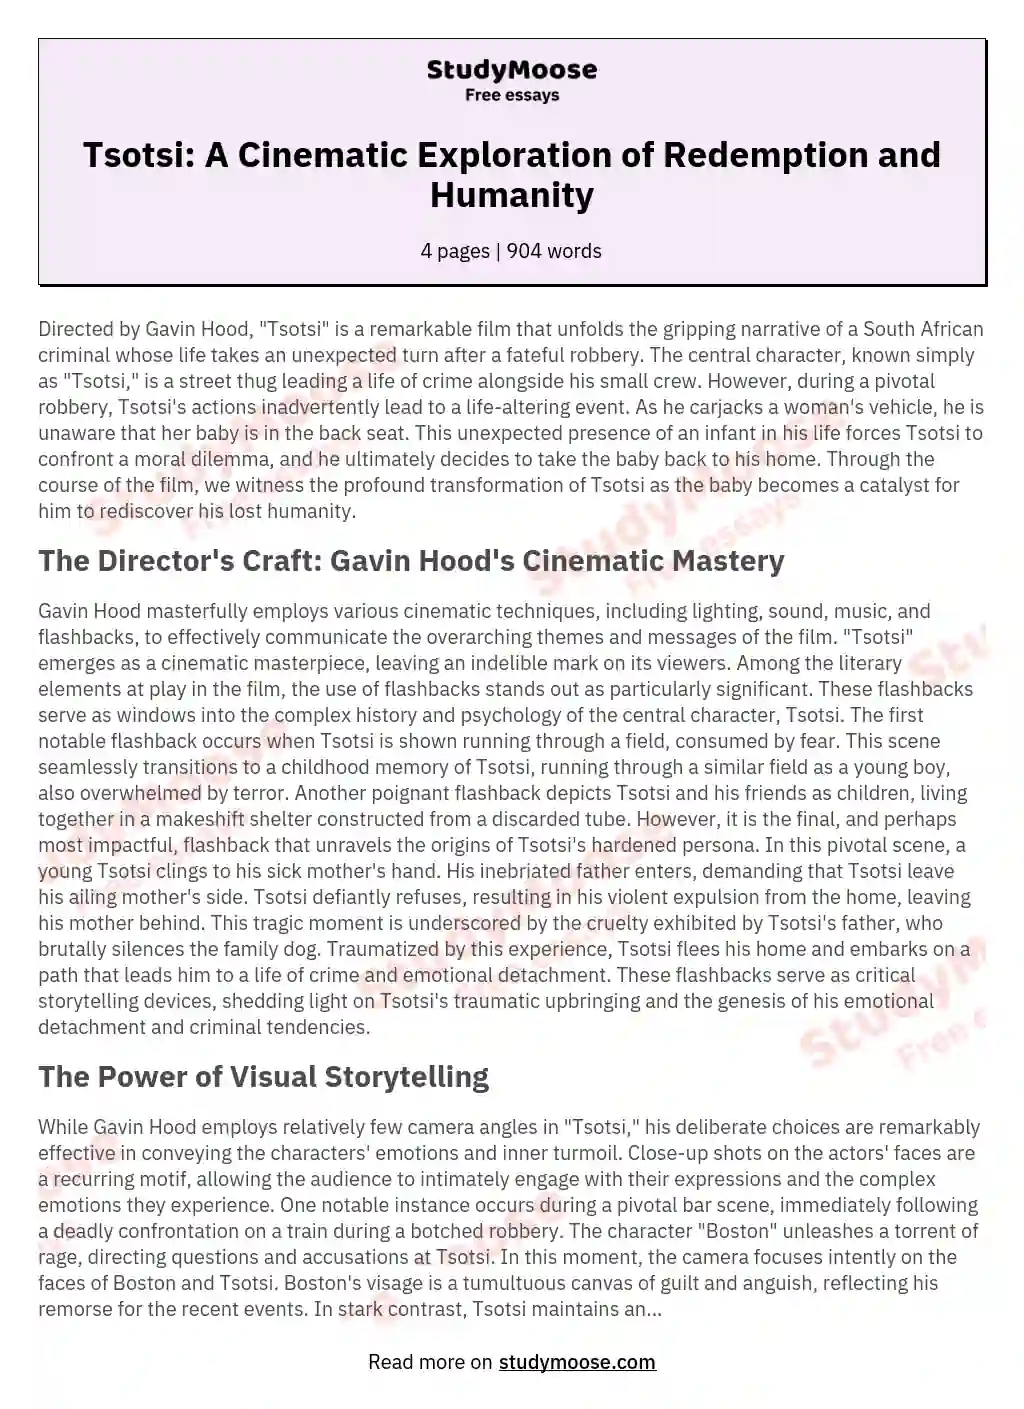 tsotsi summary essay pdf